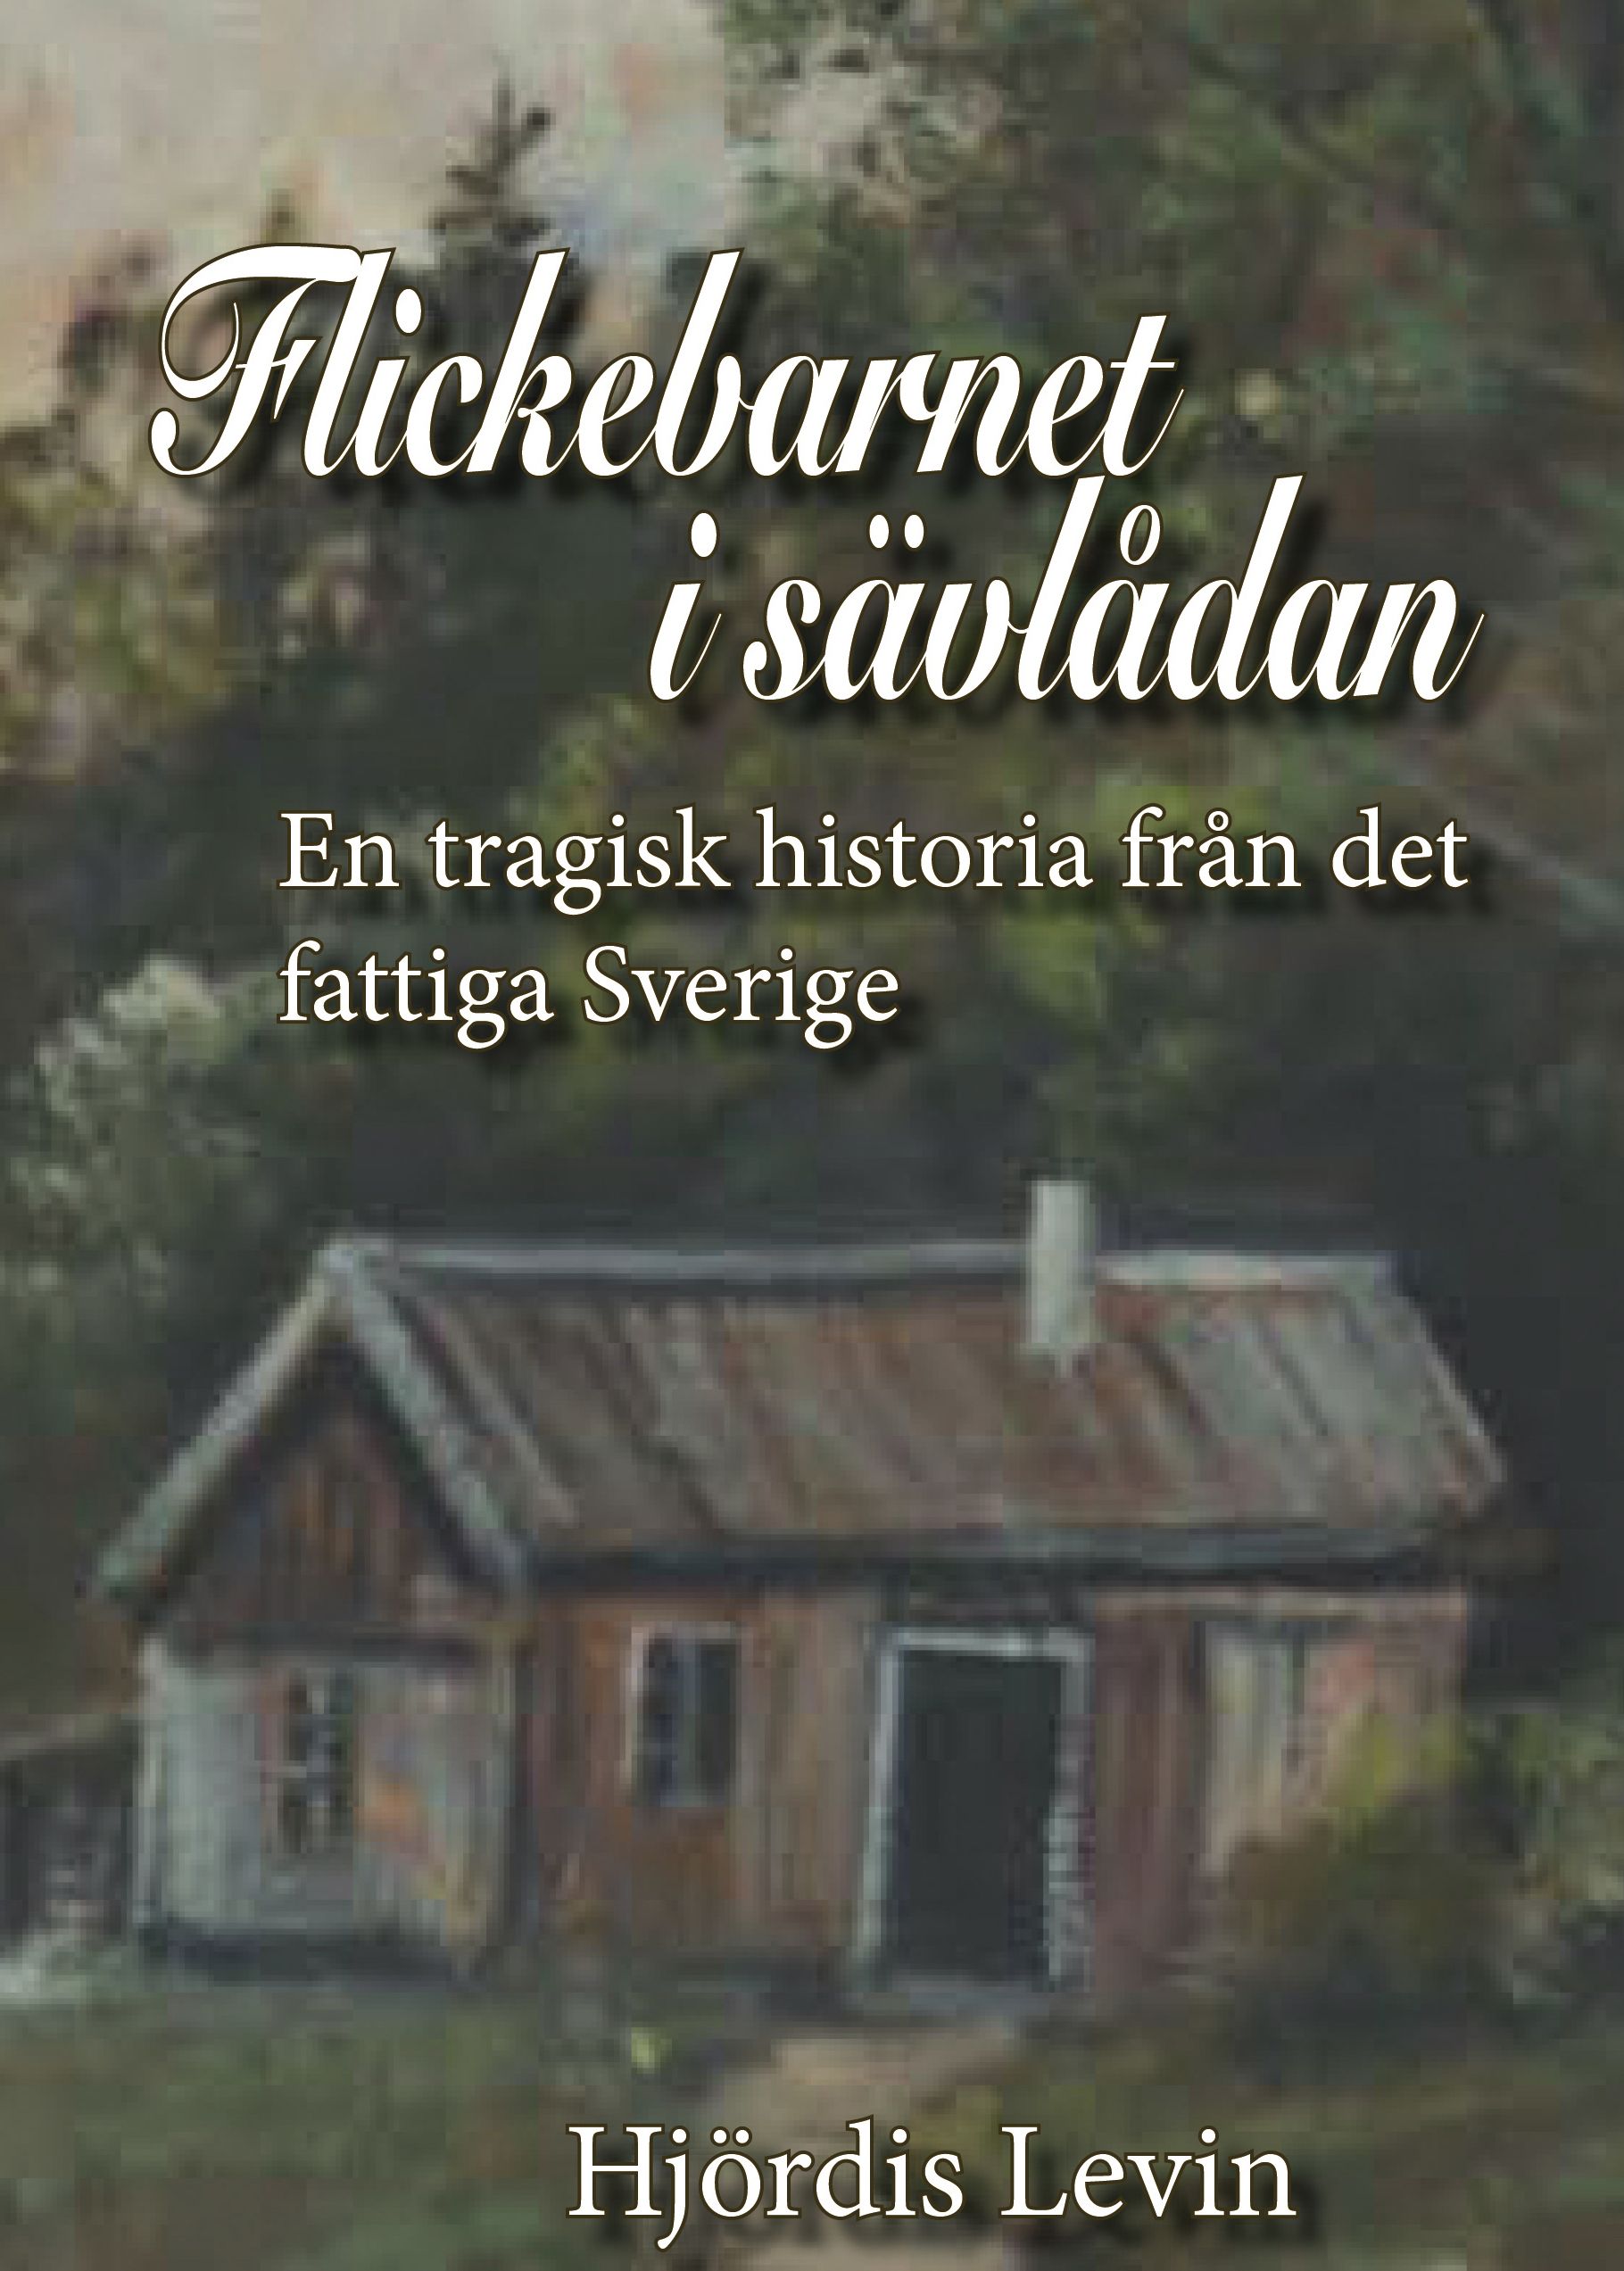 Flickebarnet i sävlådan - en tragisk historia från det fattiga Sverige, e-bok av Hjördis Levin